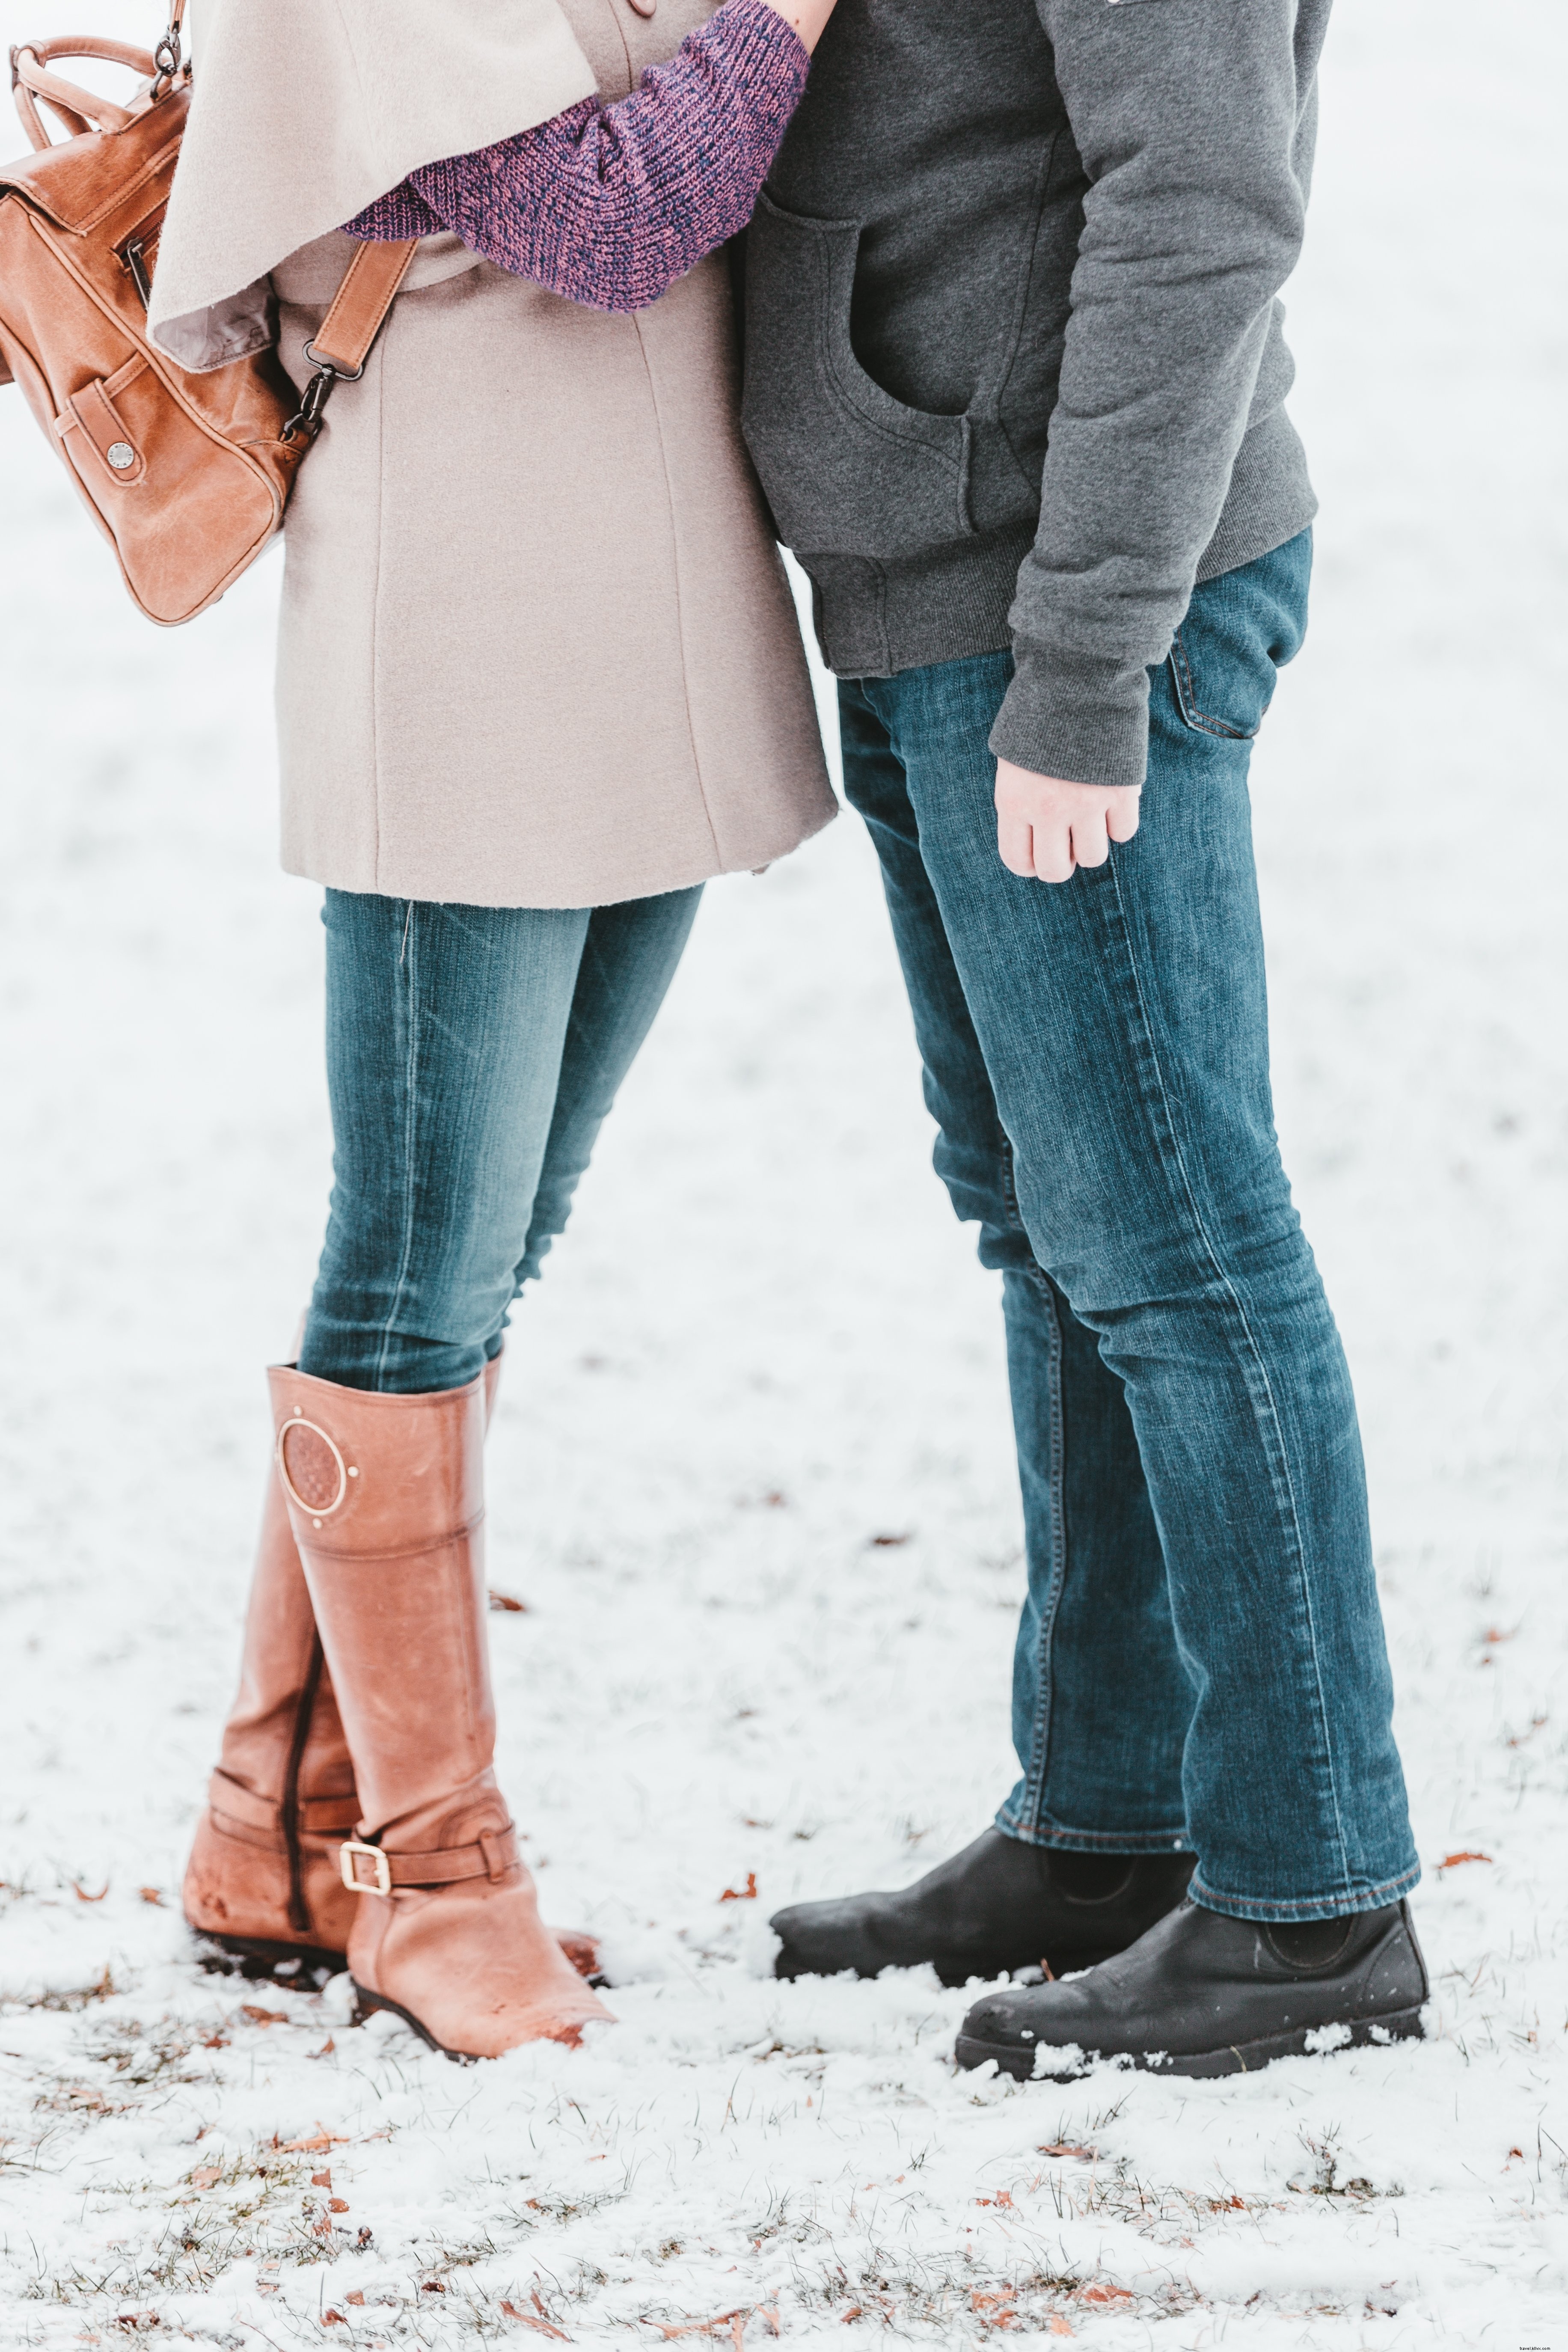 Um casal consegue um abraço caloroso na foto de inverno